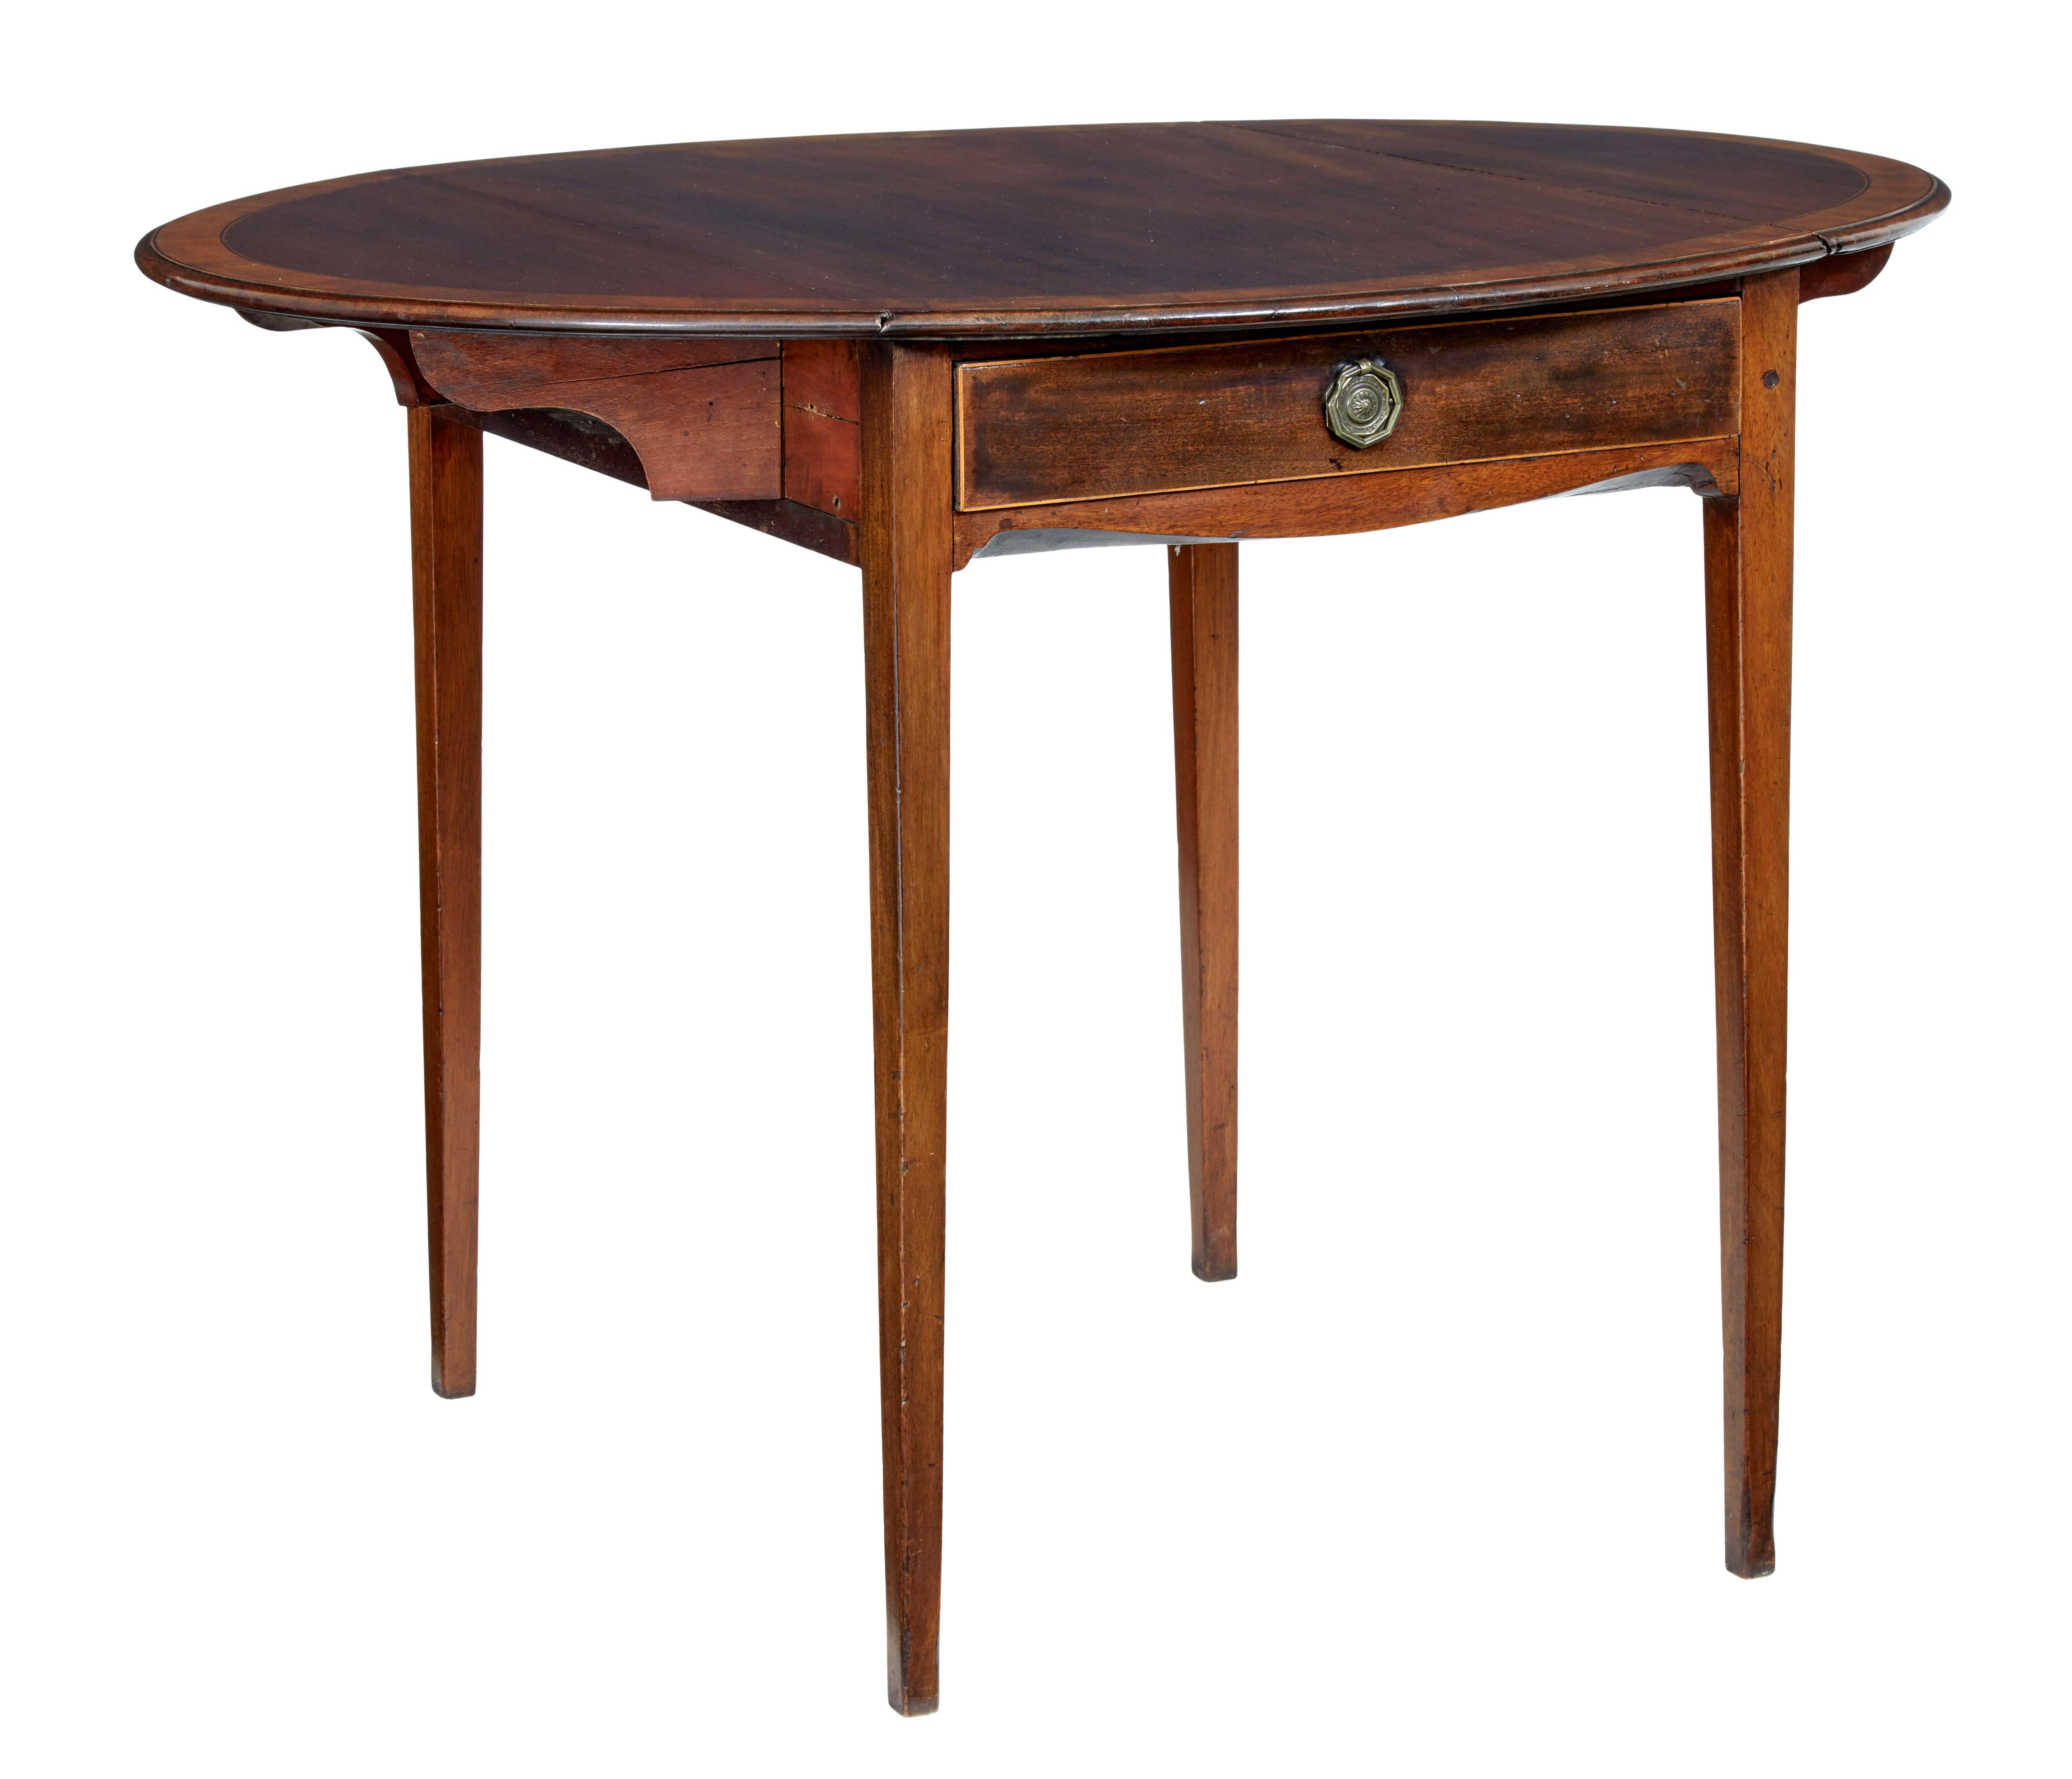 Ein feiner Pembroke-Tisch mit Querbändern, um 1825.

Die Fallblätter öffnen sich zu einer fast kreisrunden Platte, die aus Mahagoni mit Querstreifen und Ebenholzbespannung besteht.

Einzelne Schublade auf der Vorderseite mit originalem Griff, auf